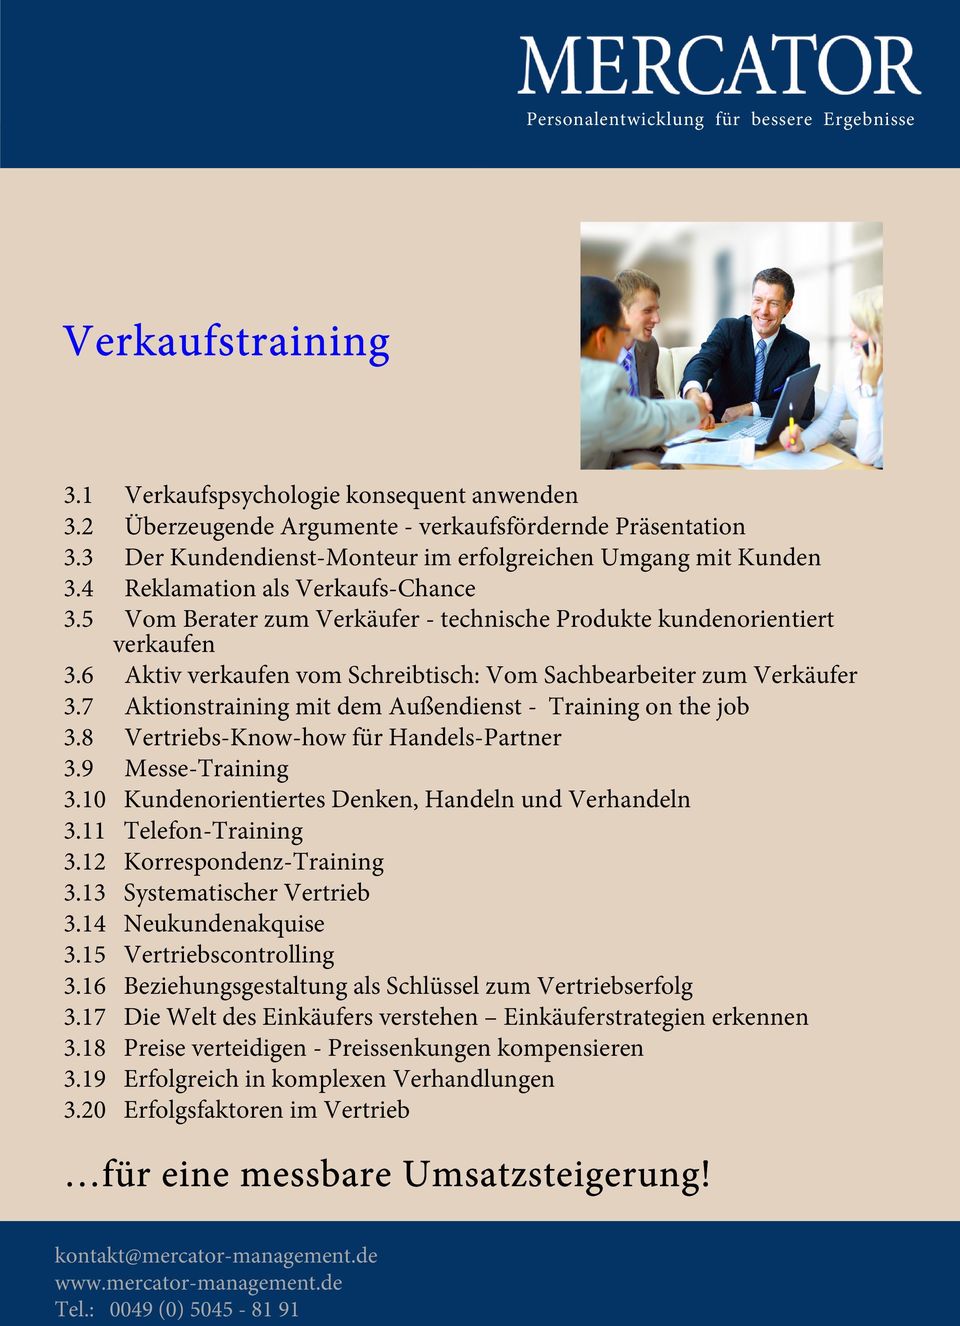 7 Aktionstraining mit dem Außendienst - Training on the job 3.8 Vertriebs-Know-how für Handels-Partner 3.9 Messe-Training 3.10 Kundenorientiertes Denken, Handeln und Verhandeln 3.